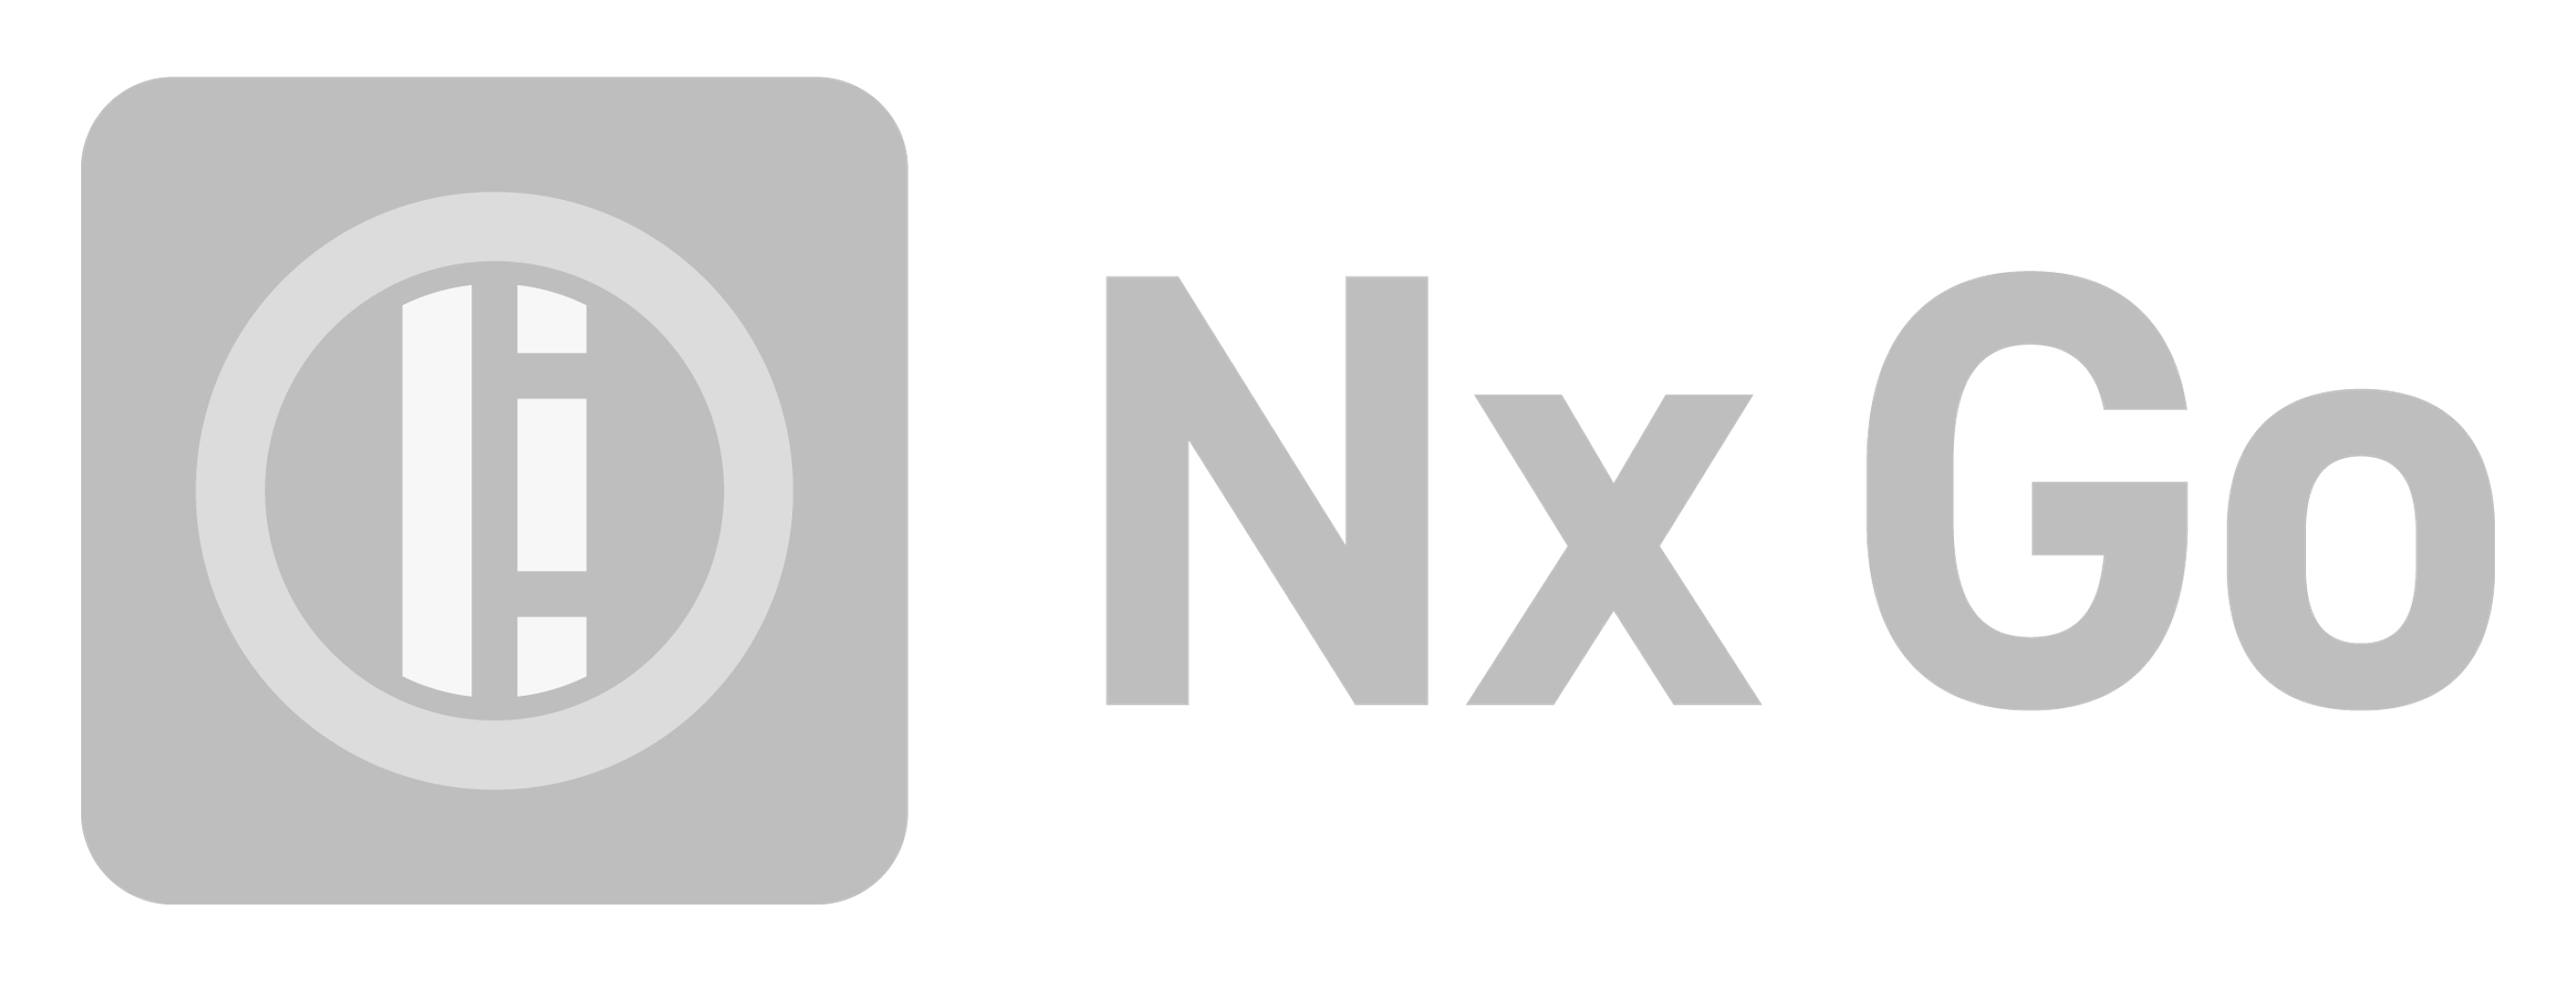 Nx-Go-Grey-1.png